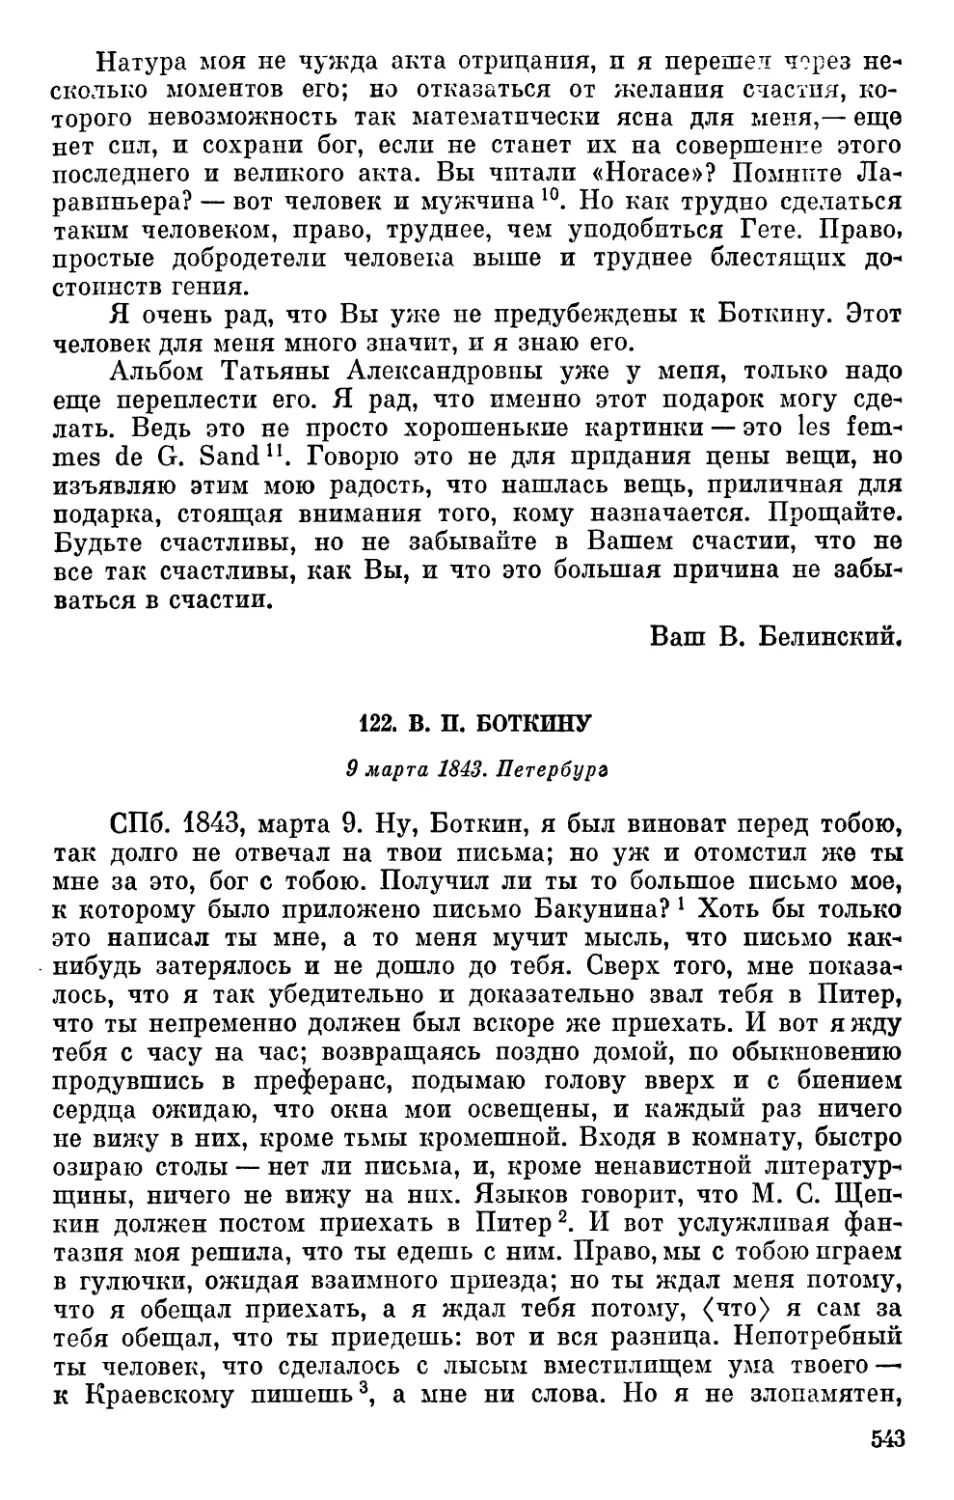 122. В. П. Боткину. 9 марта 1843